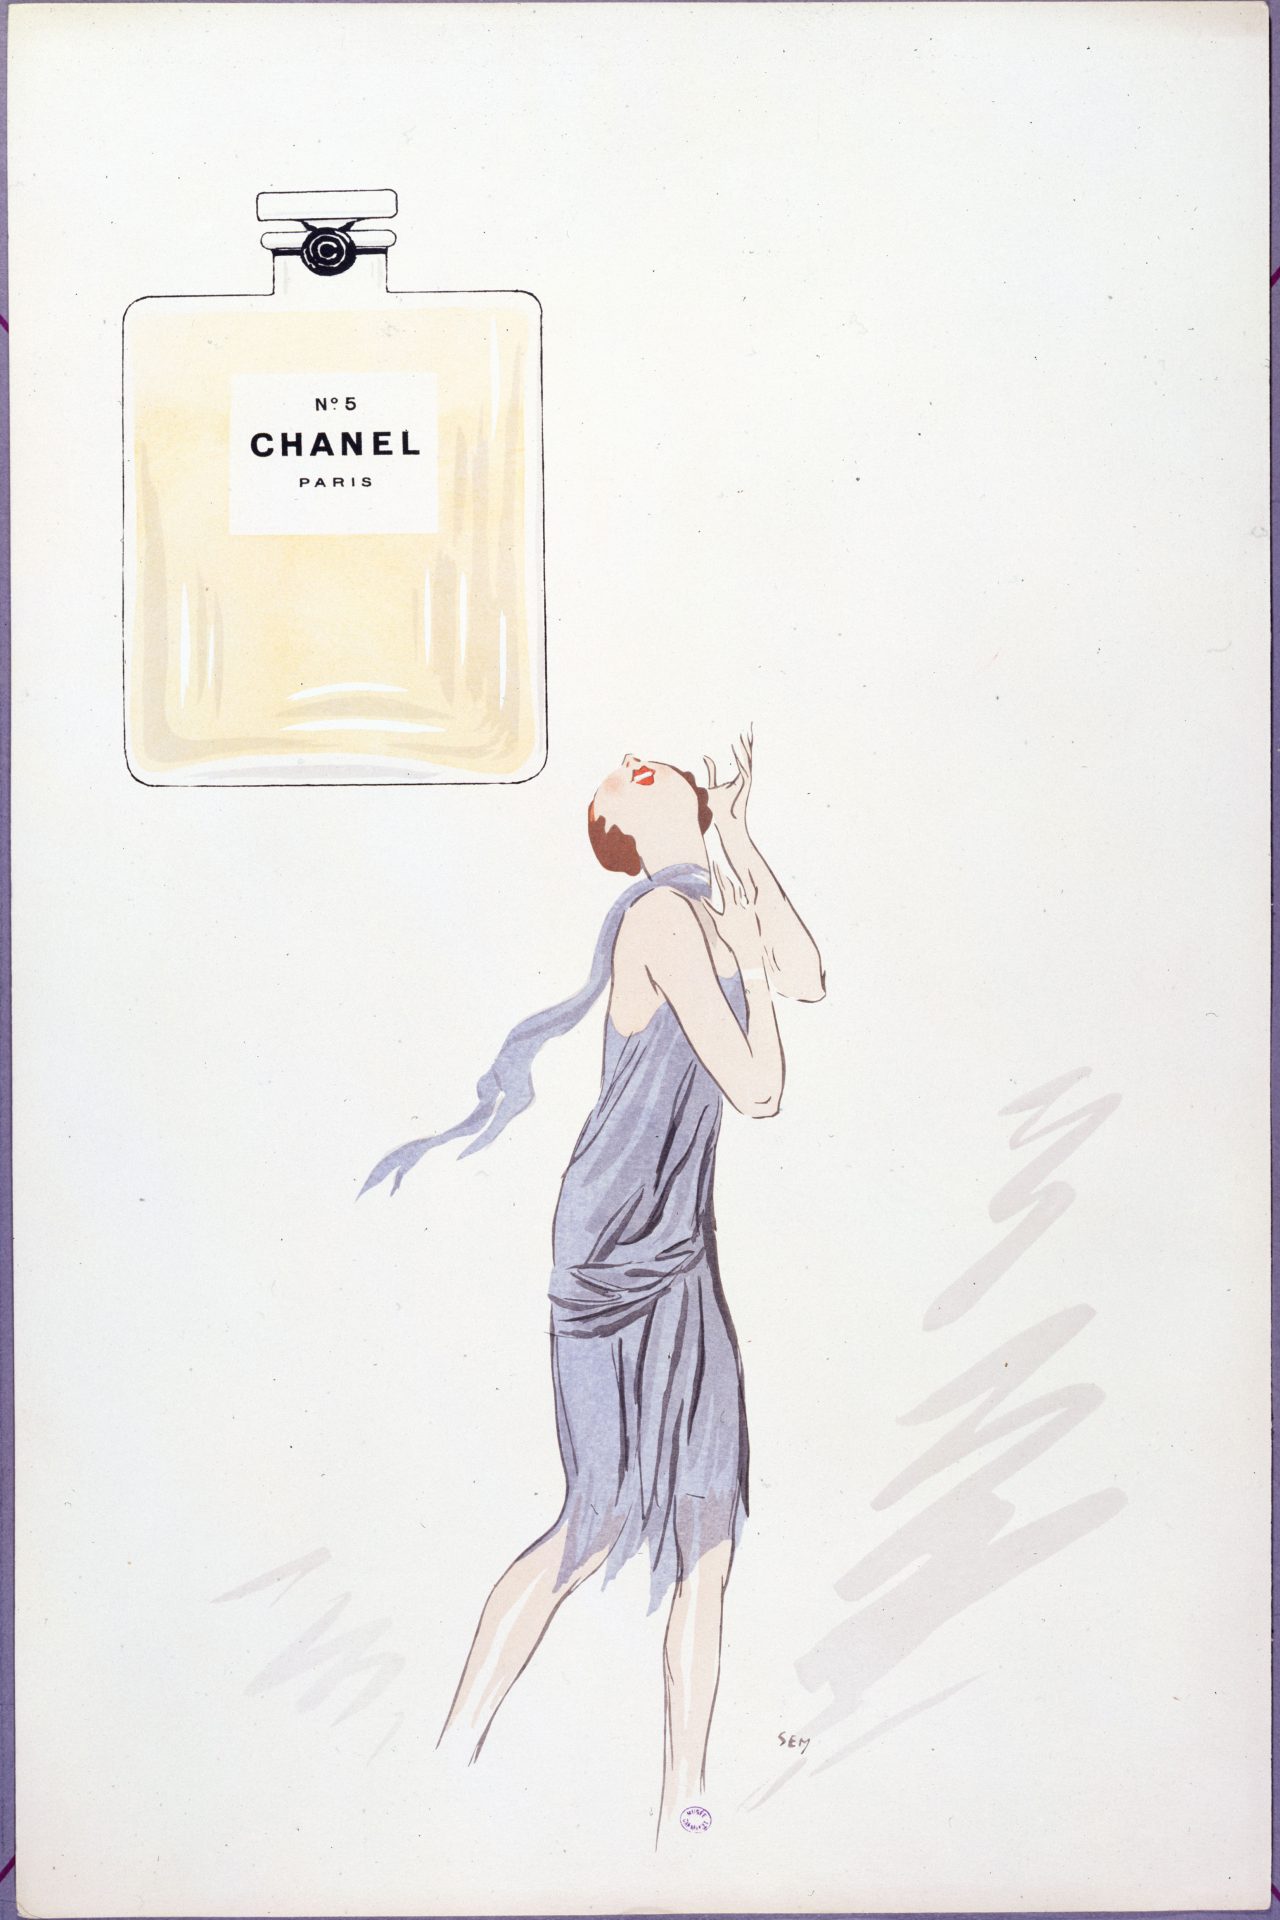 La fragancia Chanel No. 5 fue lanzada en 1921